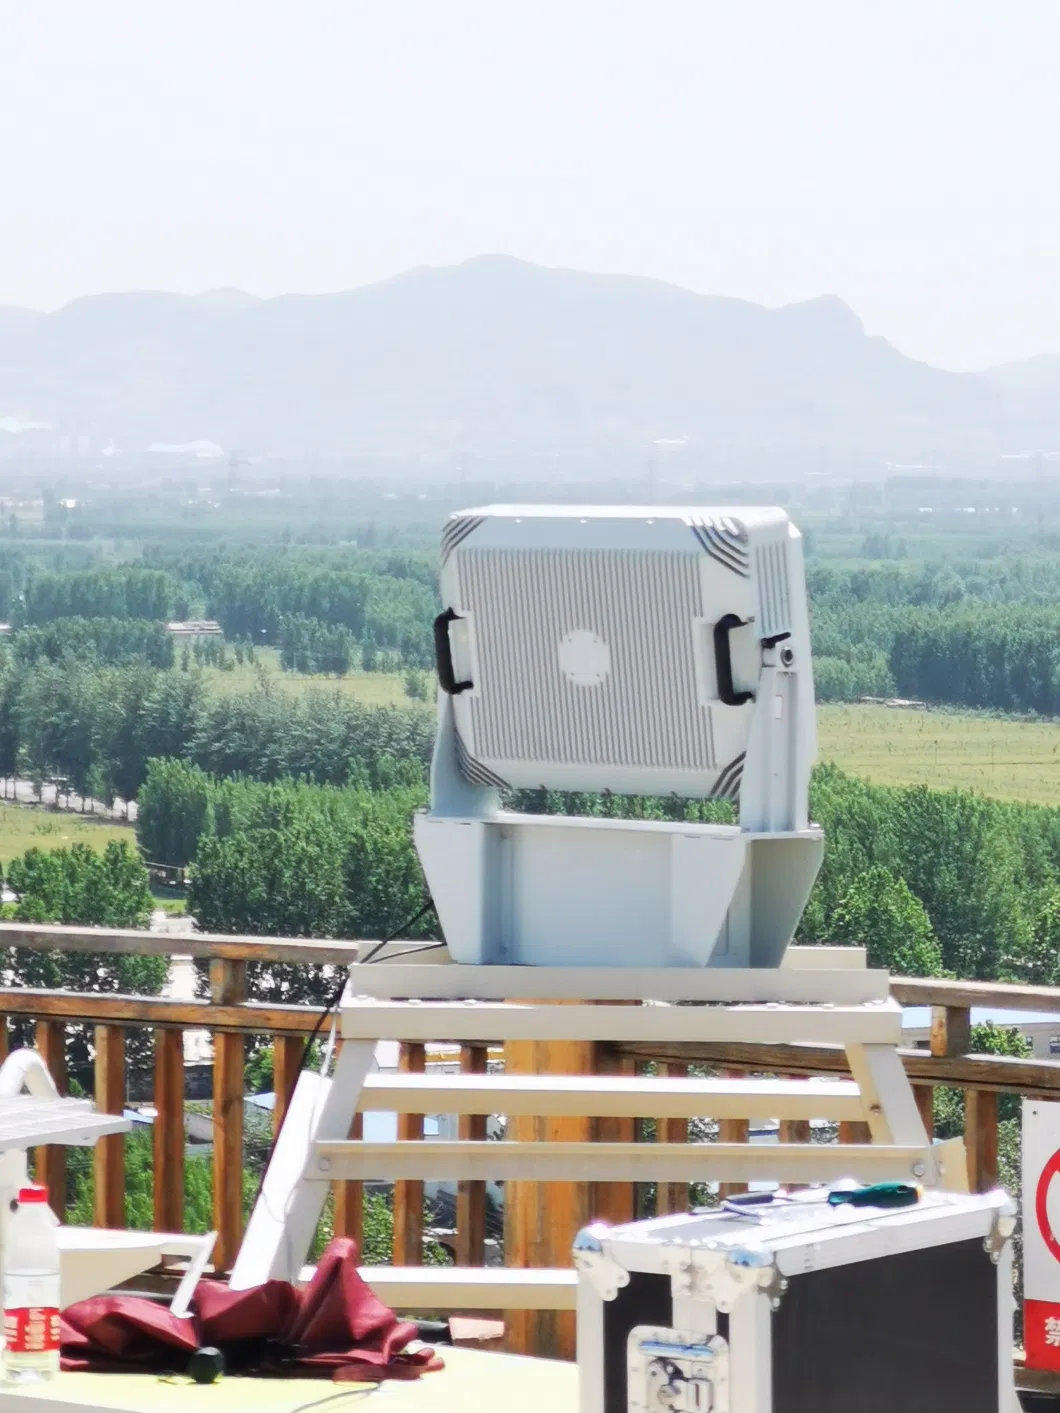 Ground Surveillacne Tracking Radar Sensor